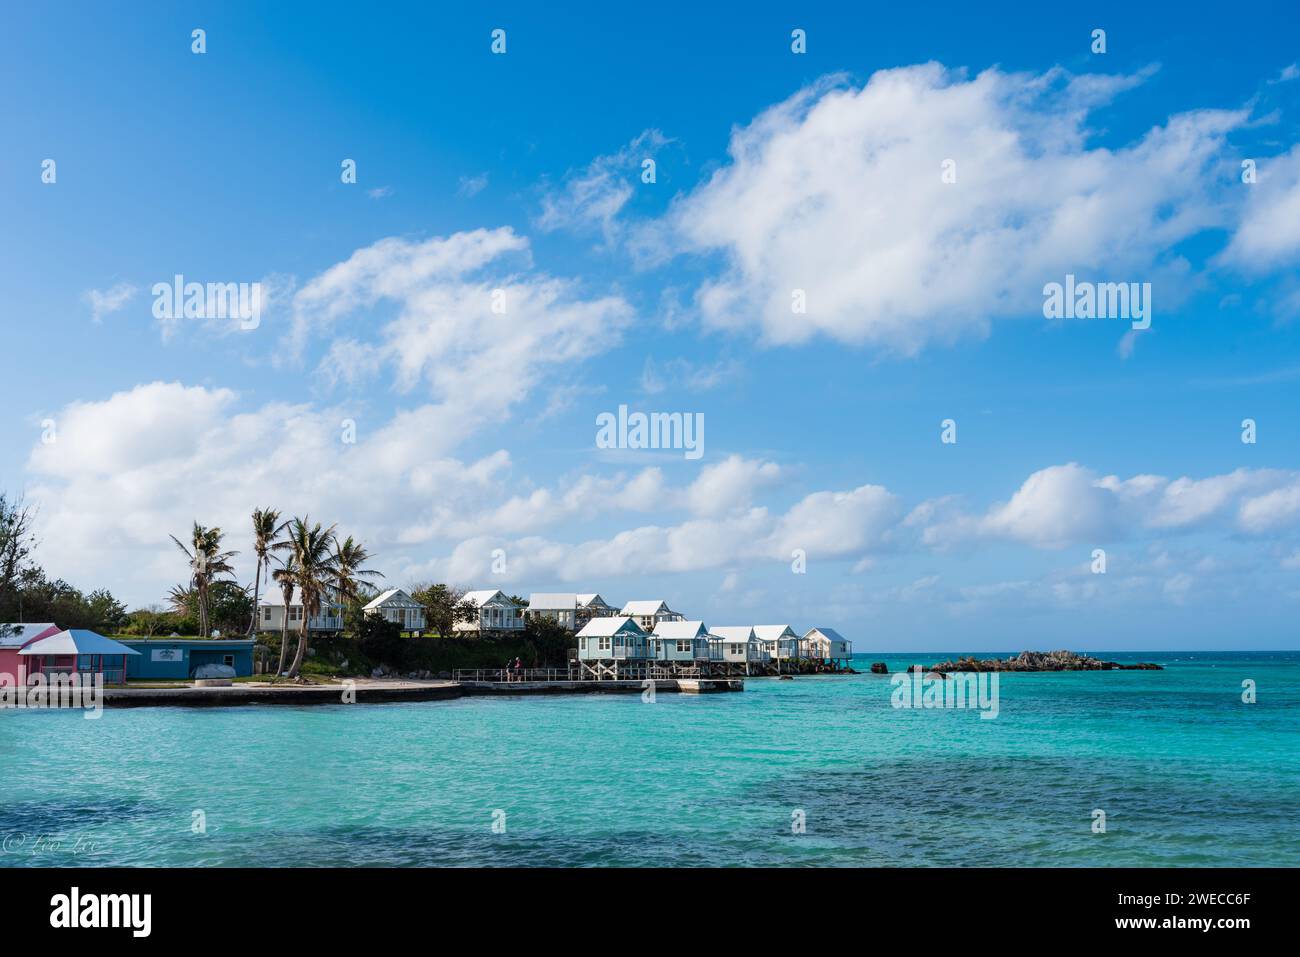 Sinfonia costiera delle Bermuda: Dove le acque azzurre incontrano i cieli vibranti, i paesaggi lussureggianti cullano le case affascinanti, creando un armonioso capolavoro dell'isola. Foto Stock